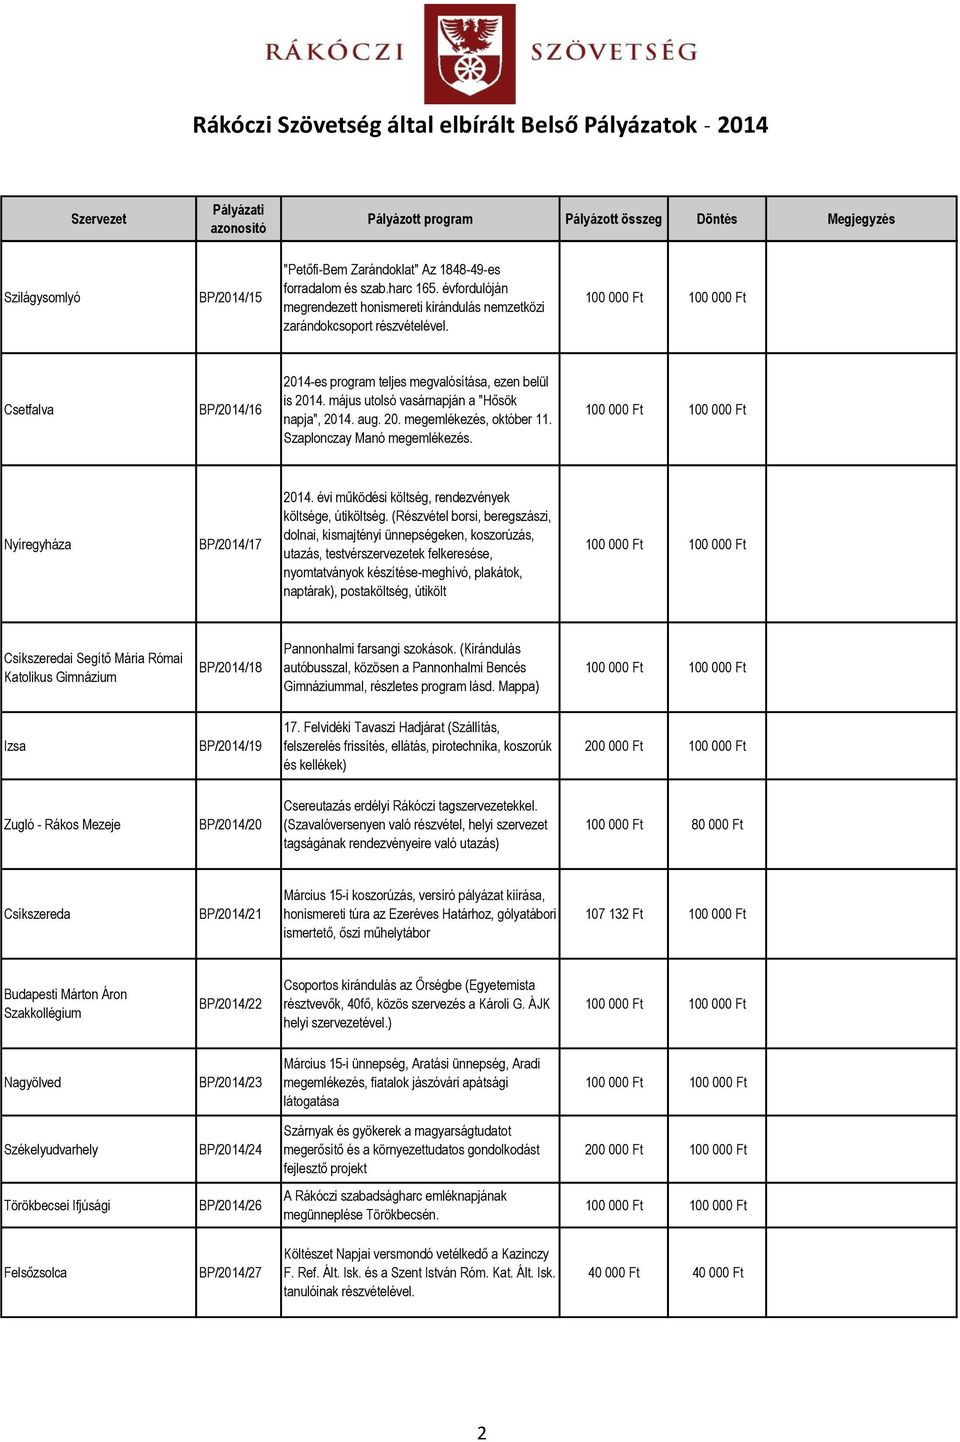 Nyíregyháza BP/2014/17 2014. évi működési költség, rendezvények költsége, útiköltség.